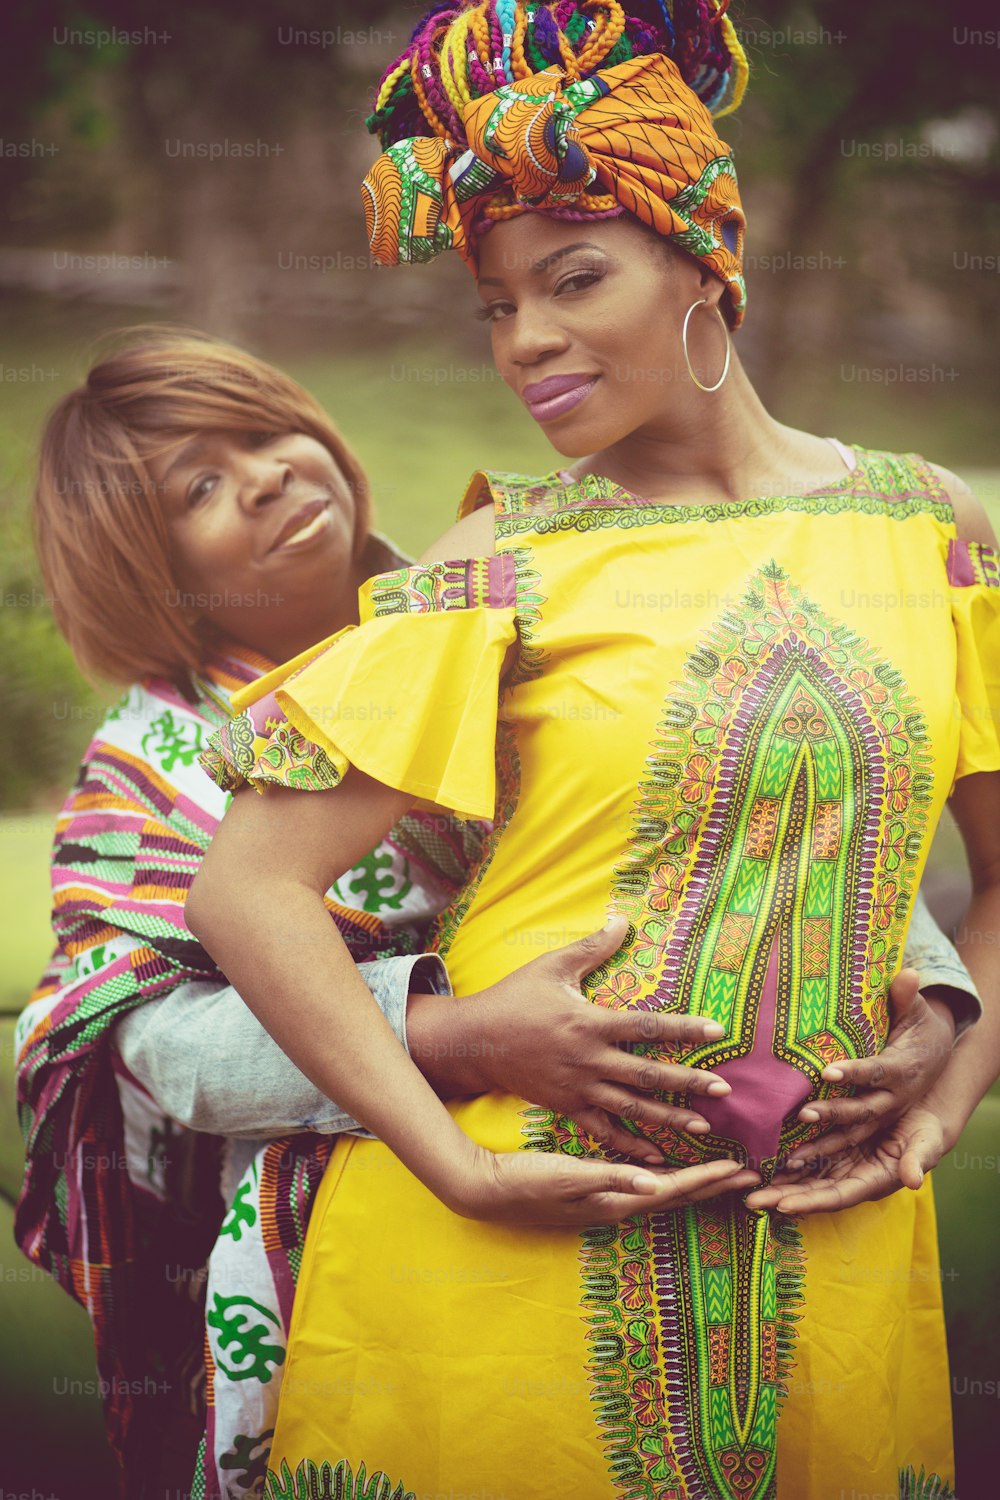 No estoy solo en este viaje. Mujer embarazada afroamericana en el parque con su madre.